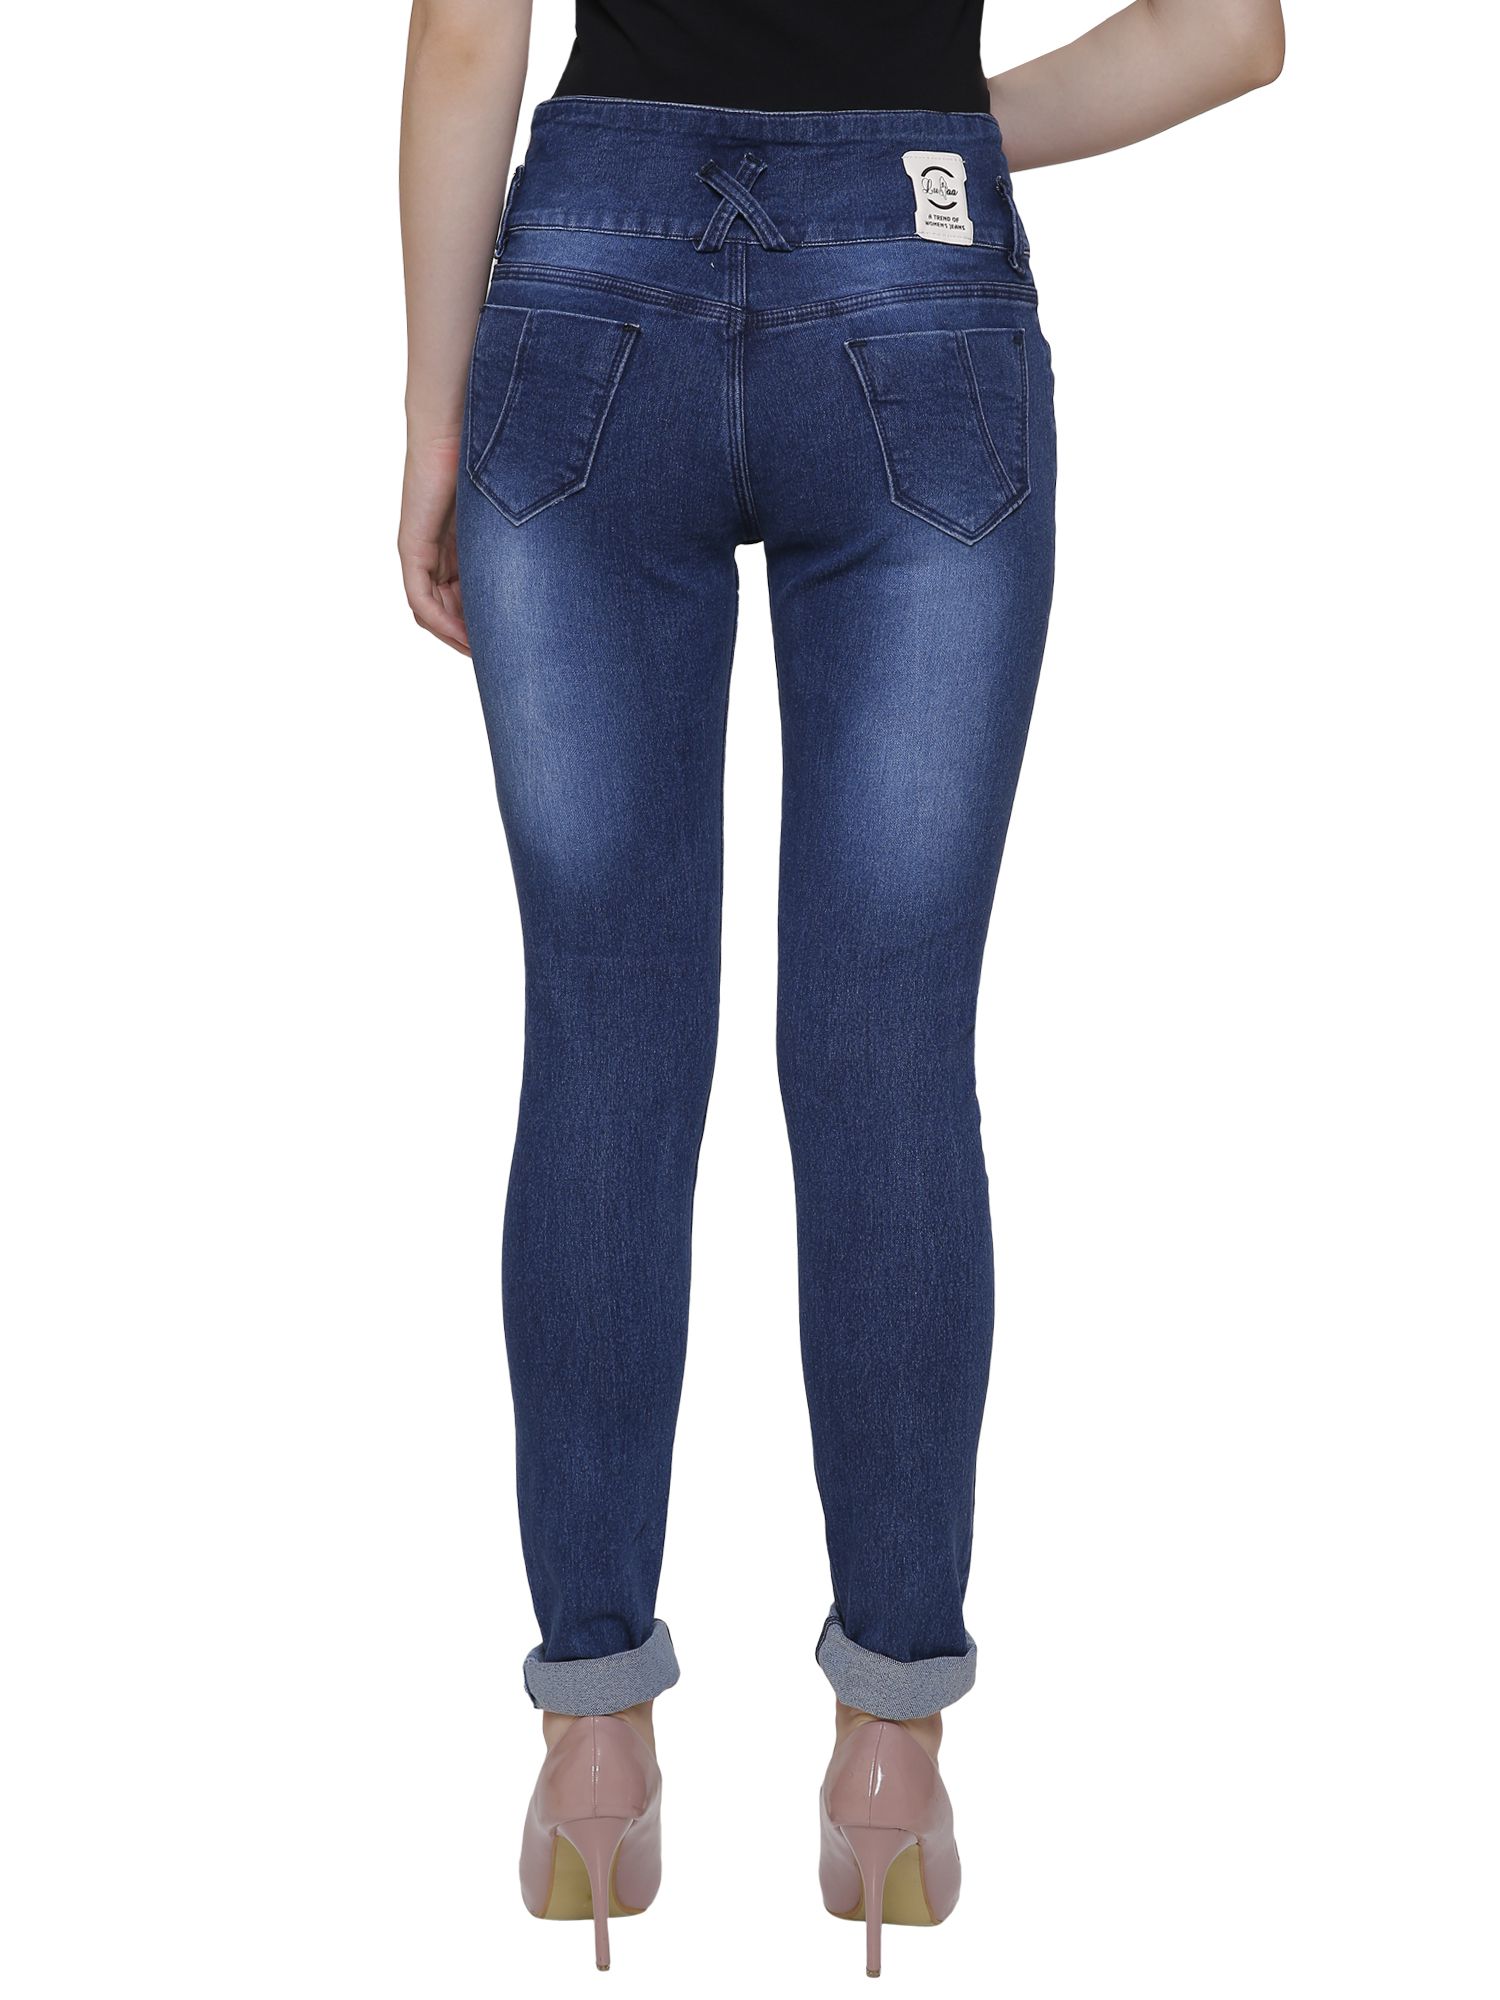 Nj's Denim Jeans - Navy - Buy Nj's Denim Jeans - Navy Online at Best ...